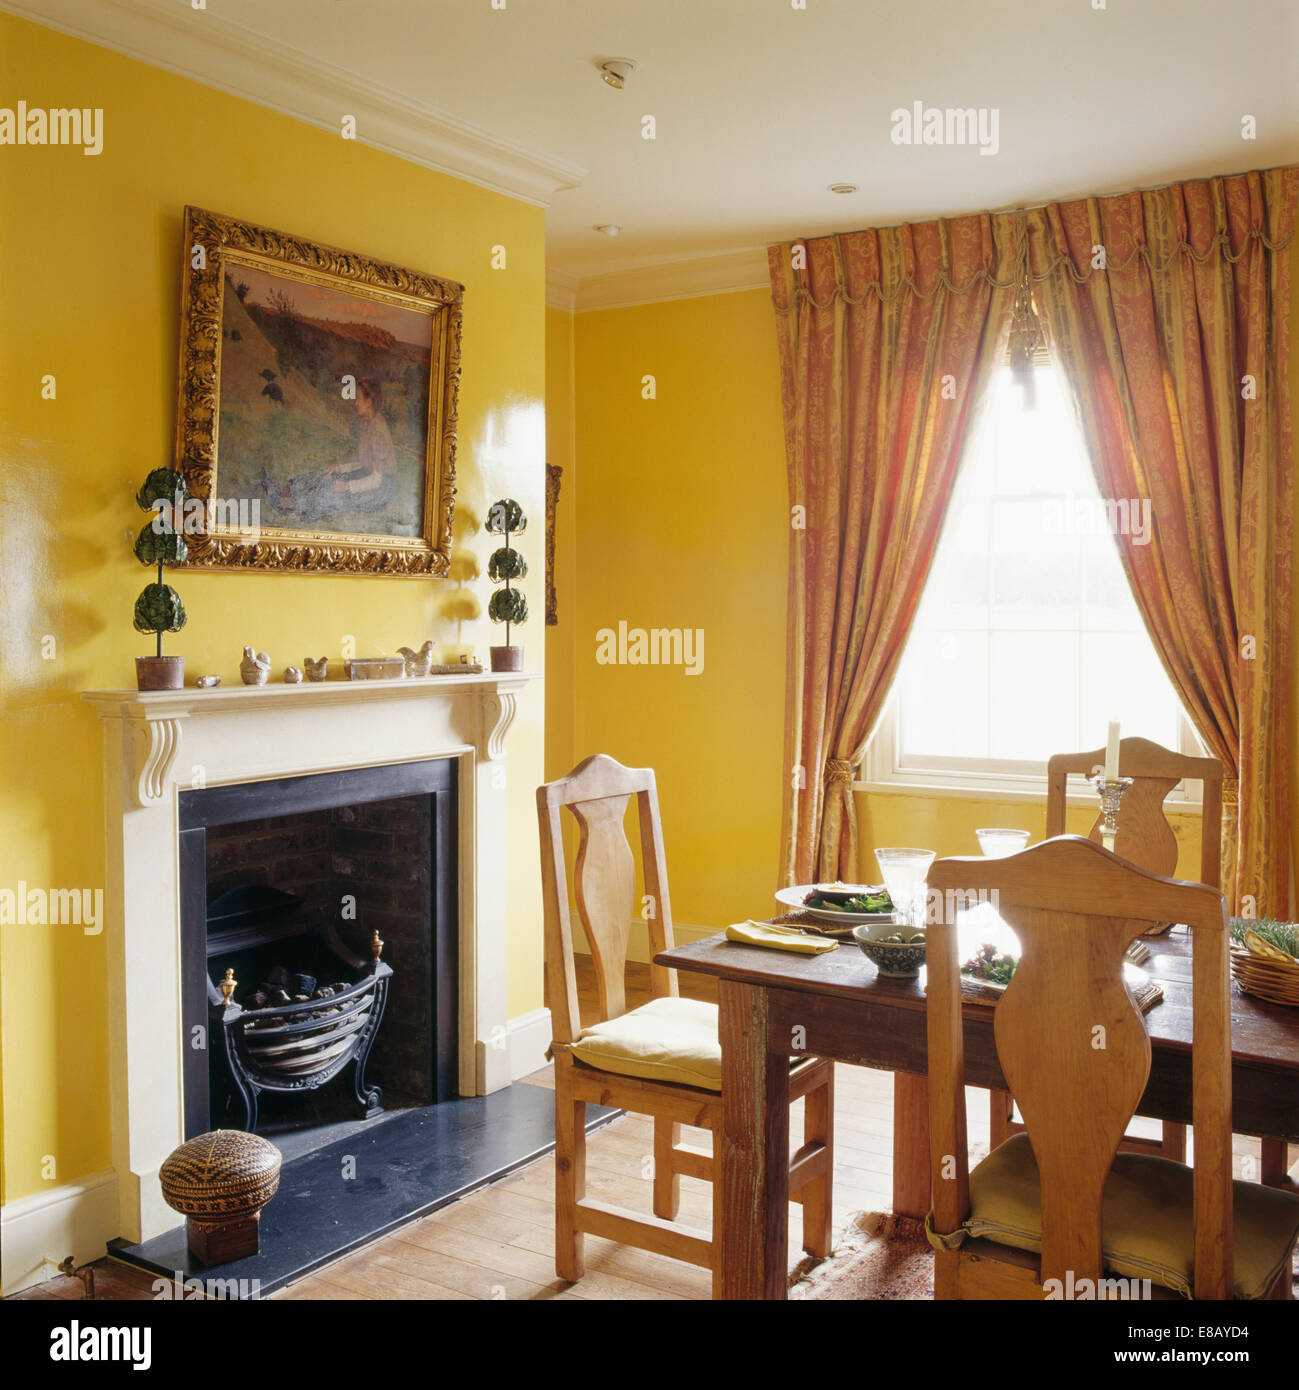 Großen goldgerahmten Spiegel über dem Kamin im gelben Speisesaal mit Full-length Vorhänge am Fenster Stockfoto